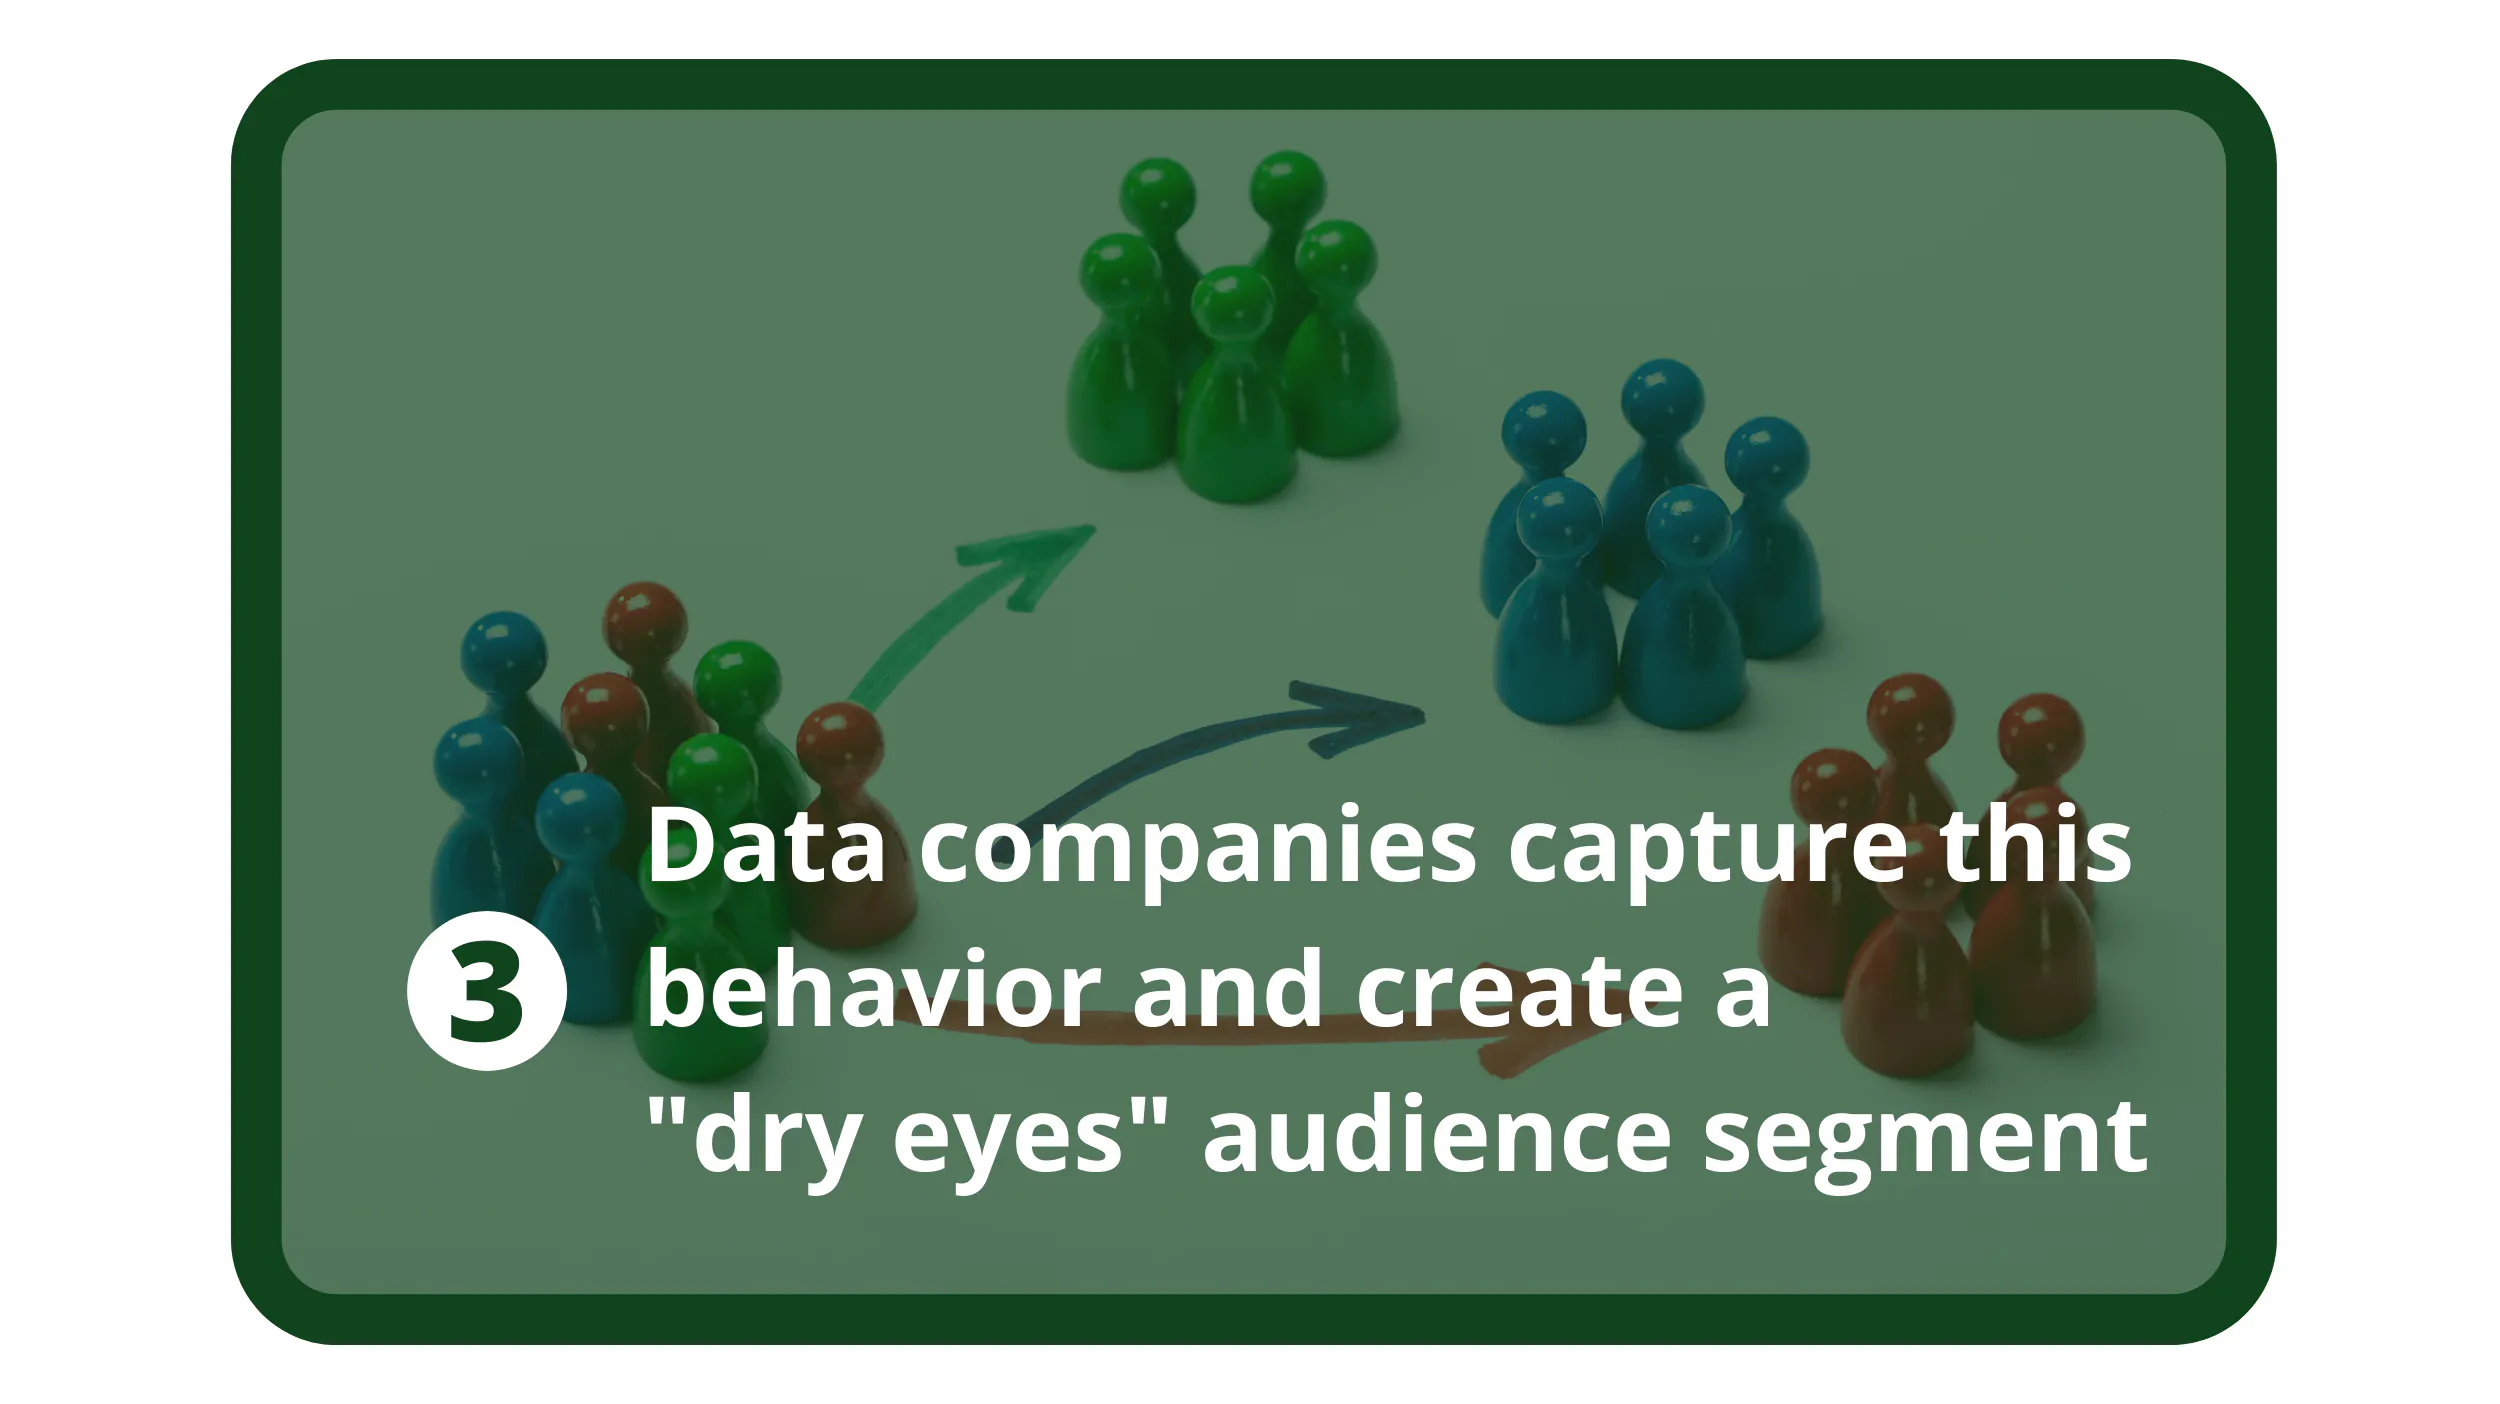 データ会社は、このようなユーザーの行動を捉えて、「ドライアイ」の視聴者層を作ります。